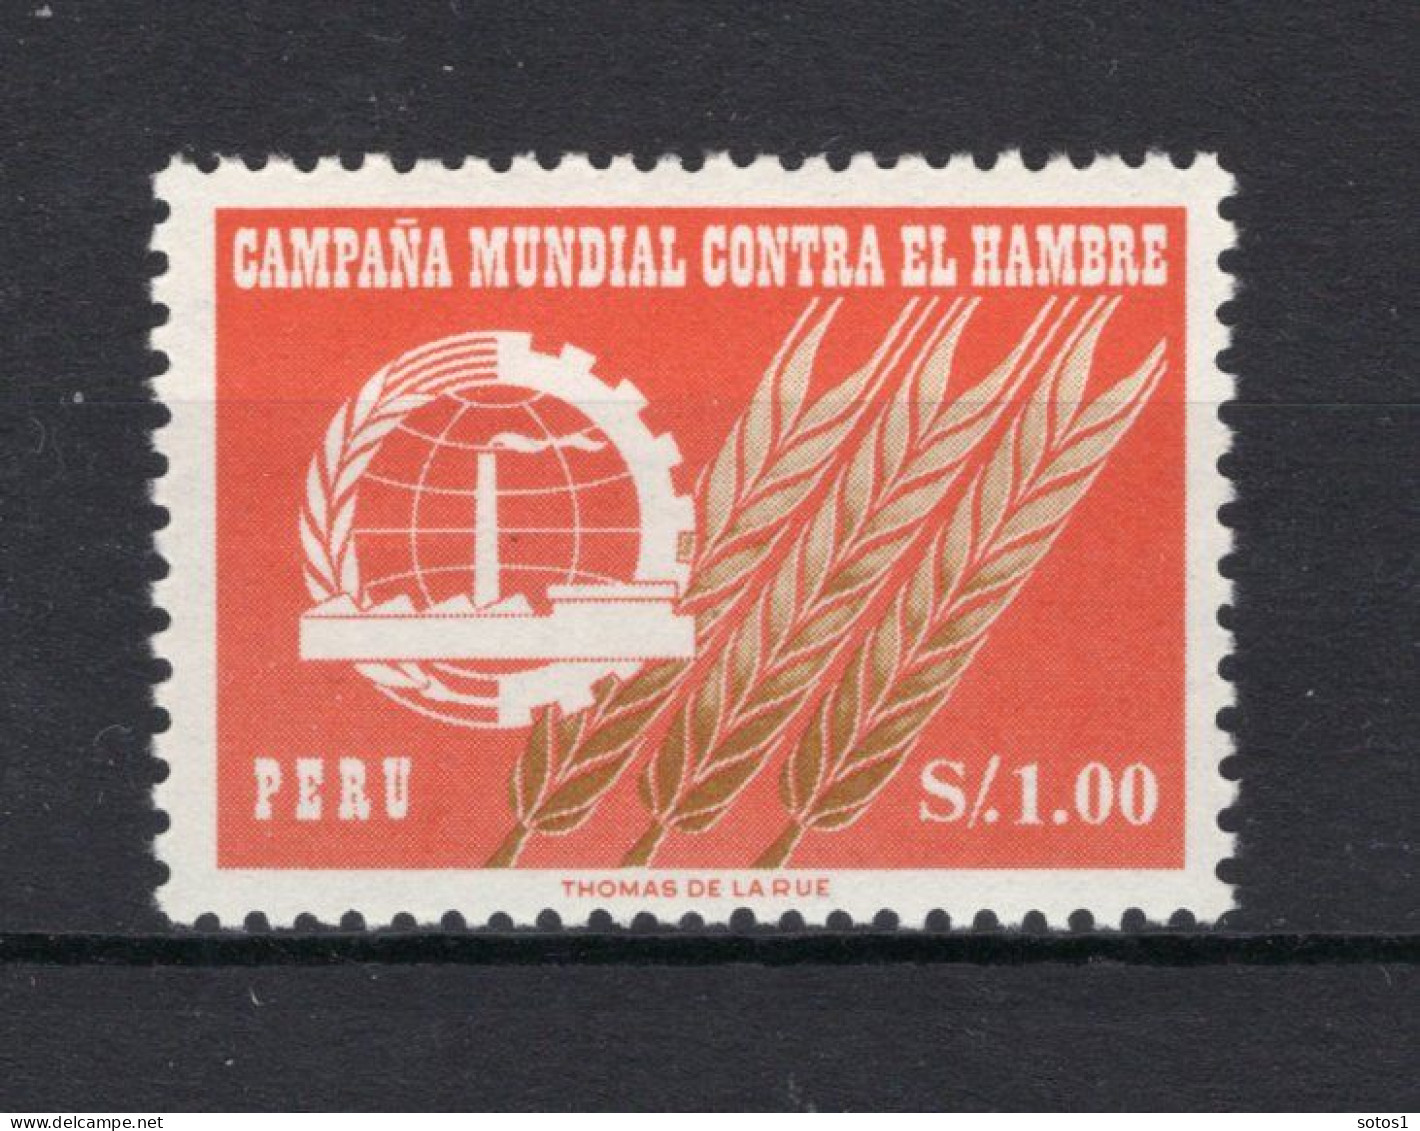 PERU Yt. 464 MNH 1963 - Pérou